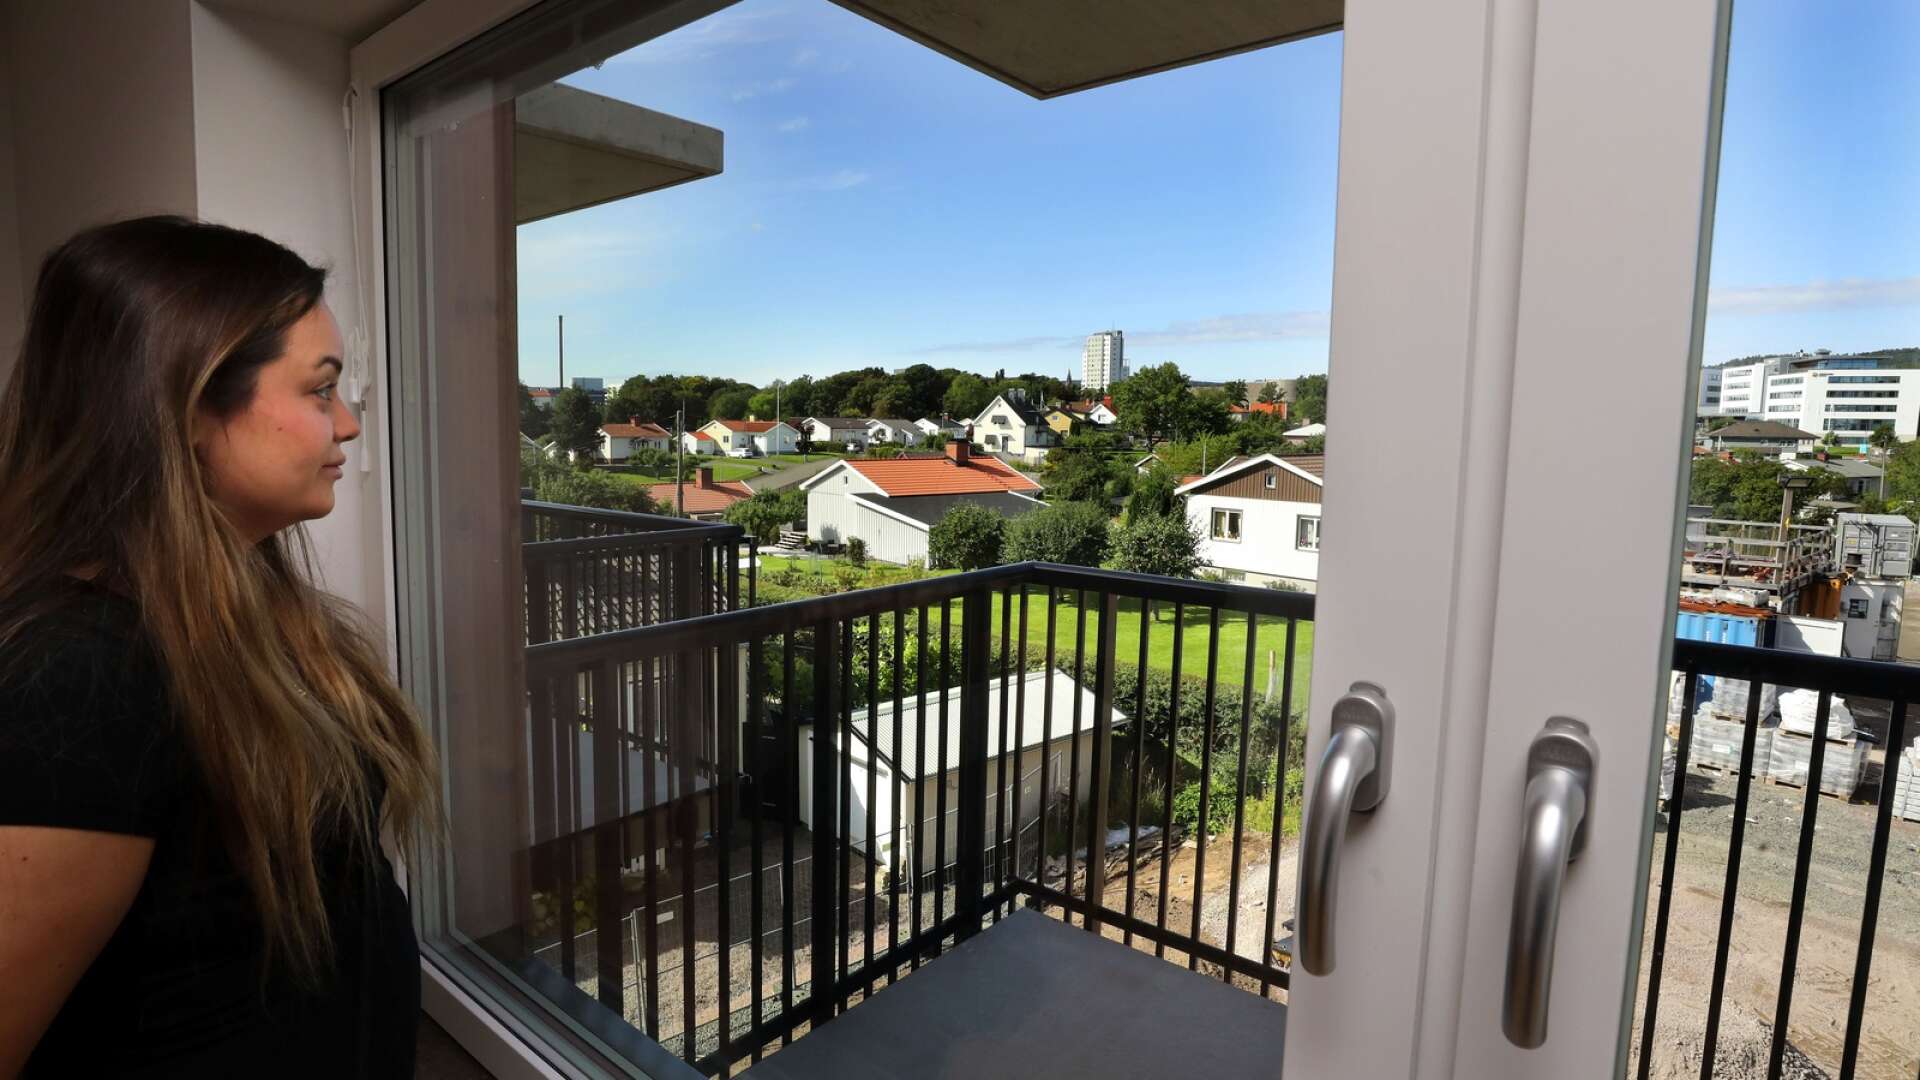 ”Det känns så lyxigt och härligt med en egen balkong” Olivia Jonsson flyttar nu in i en lägenhet i Skövdebostäders Bostället, i december är del två av byggprojektet klart och ytterligare 59 lägenheter står klara.